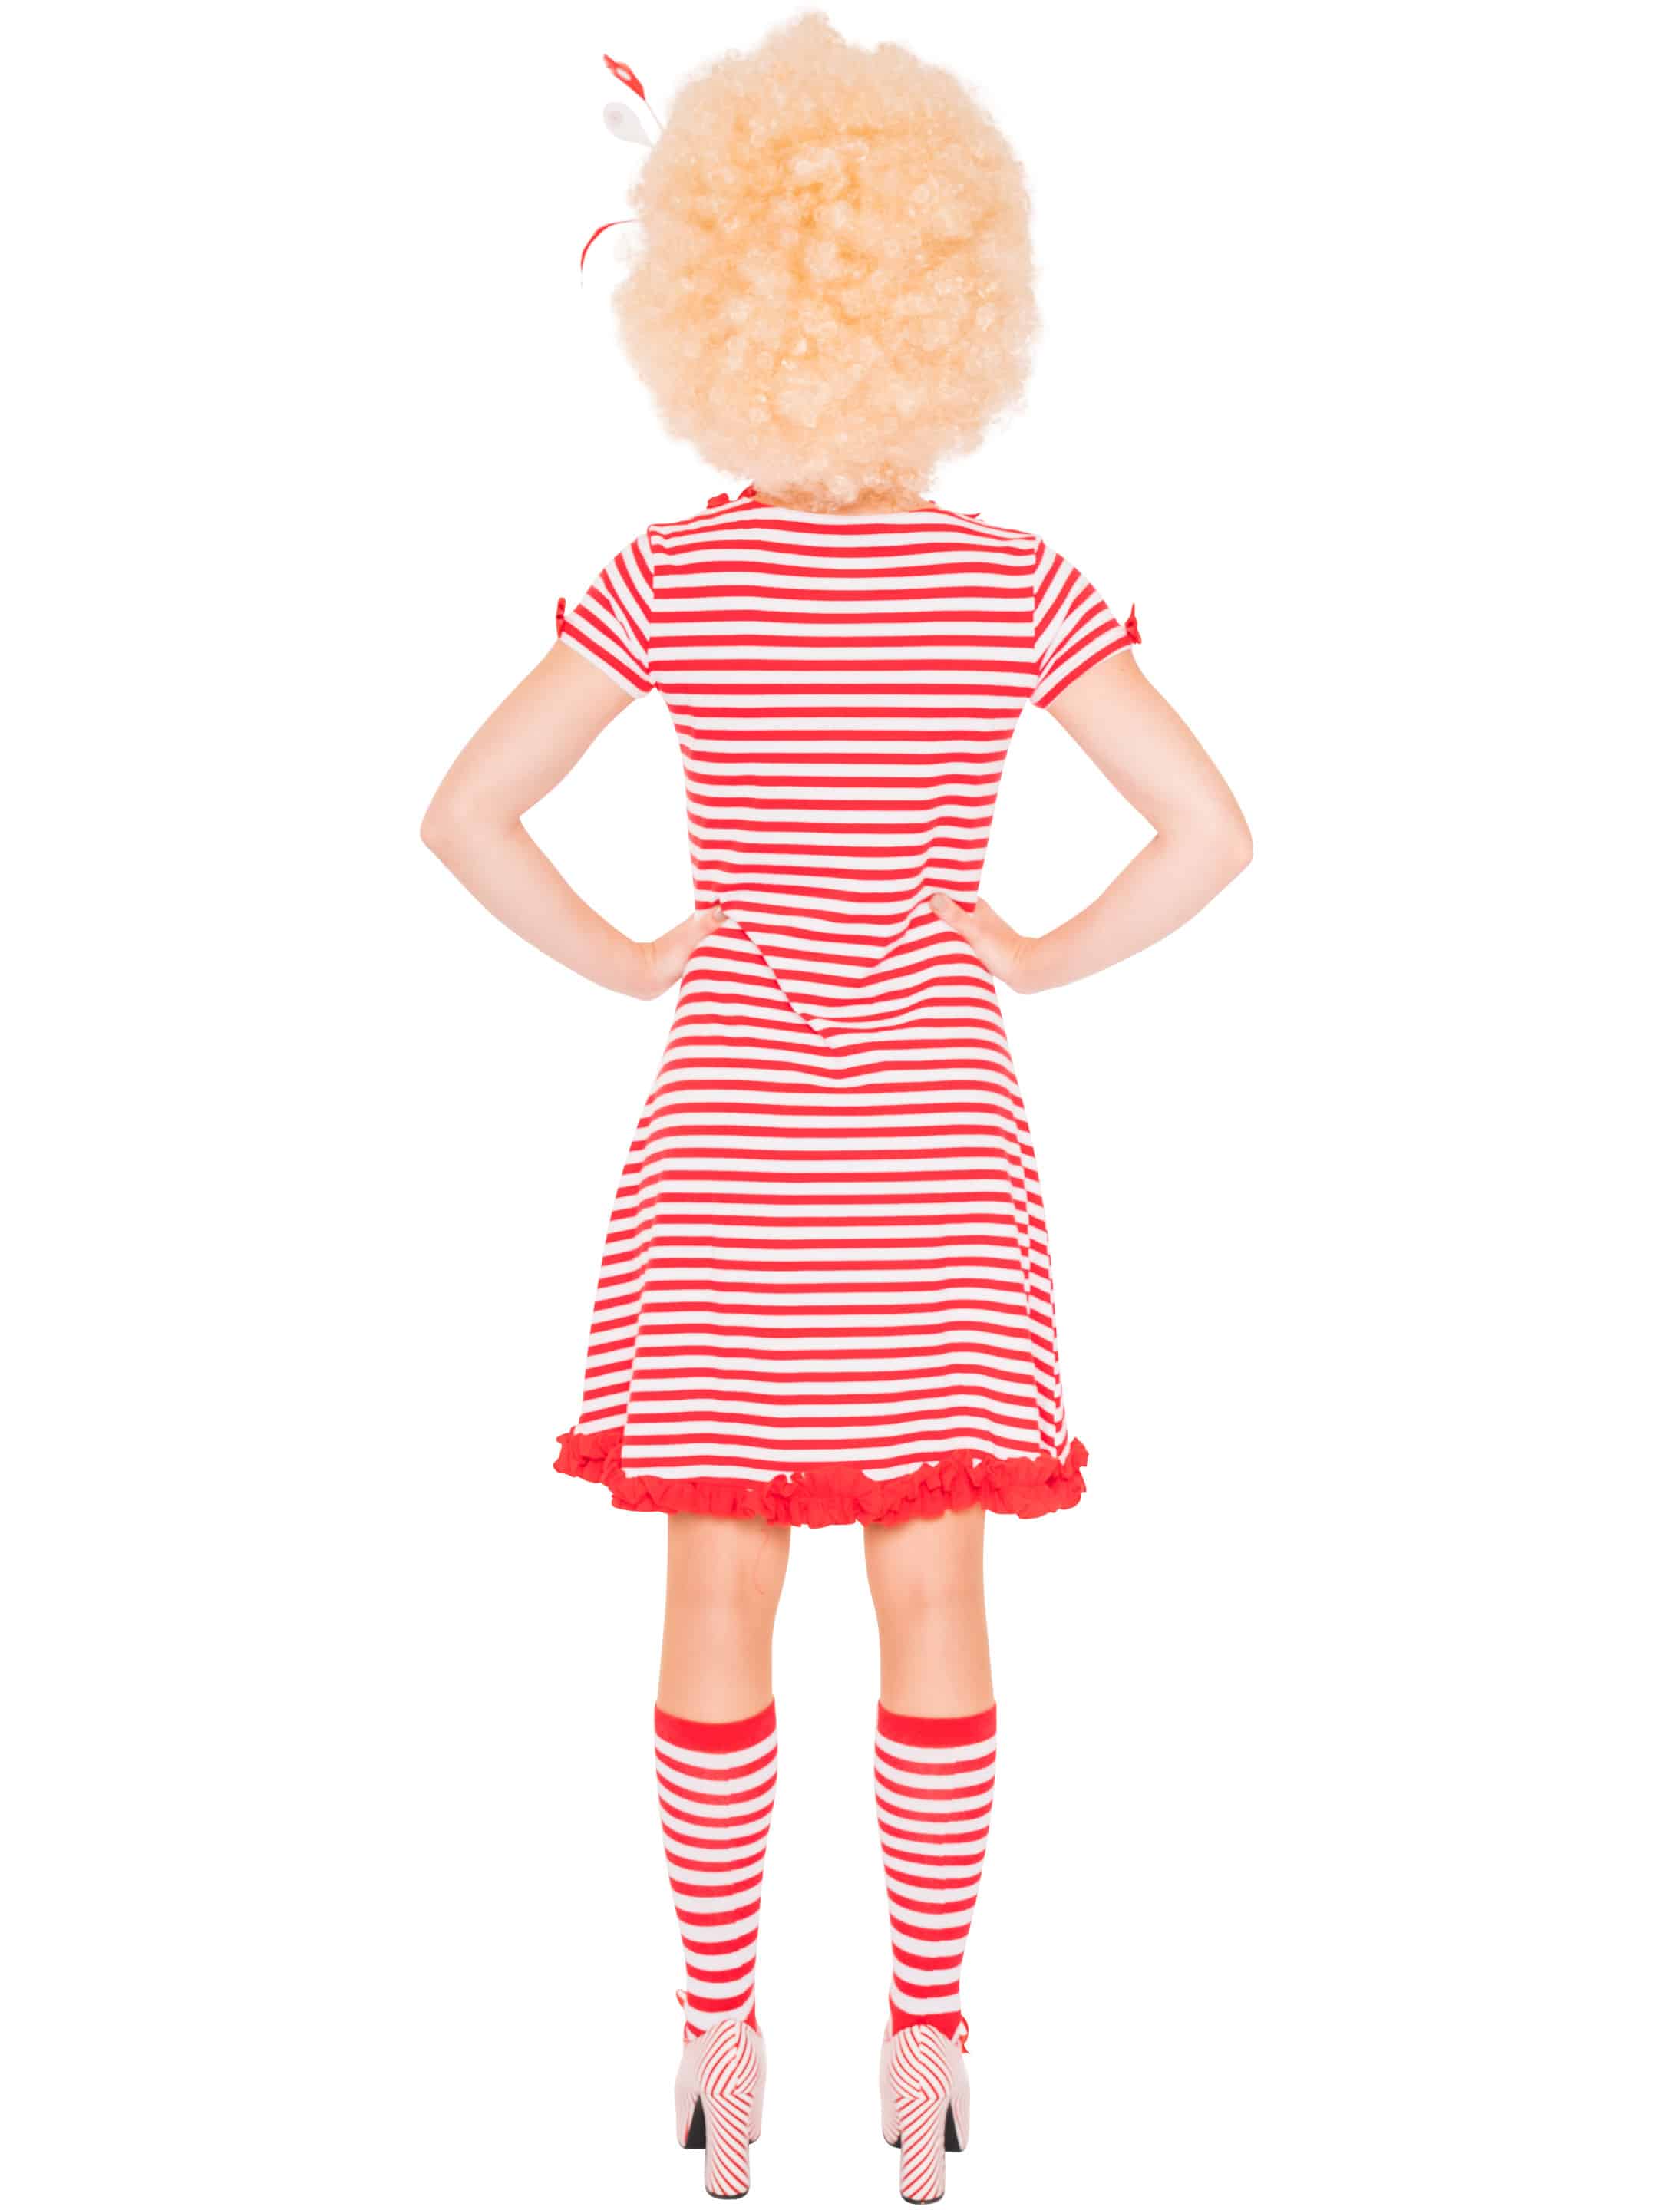 Kleid gestreift mit Herz auf Tasche Damen rot/weiß S/M